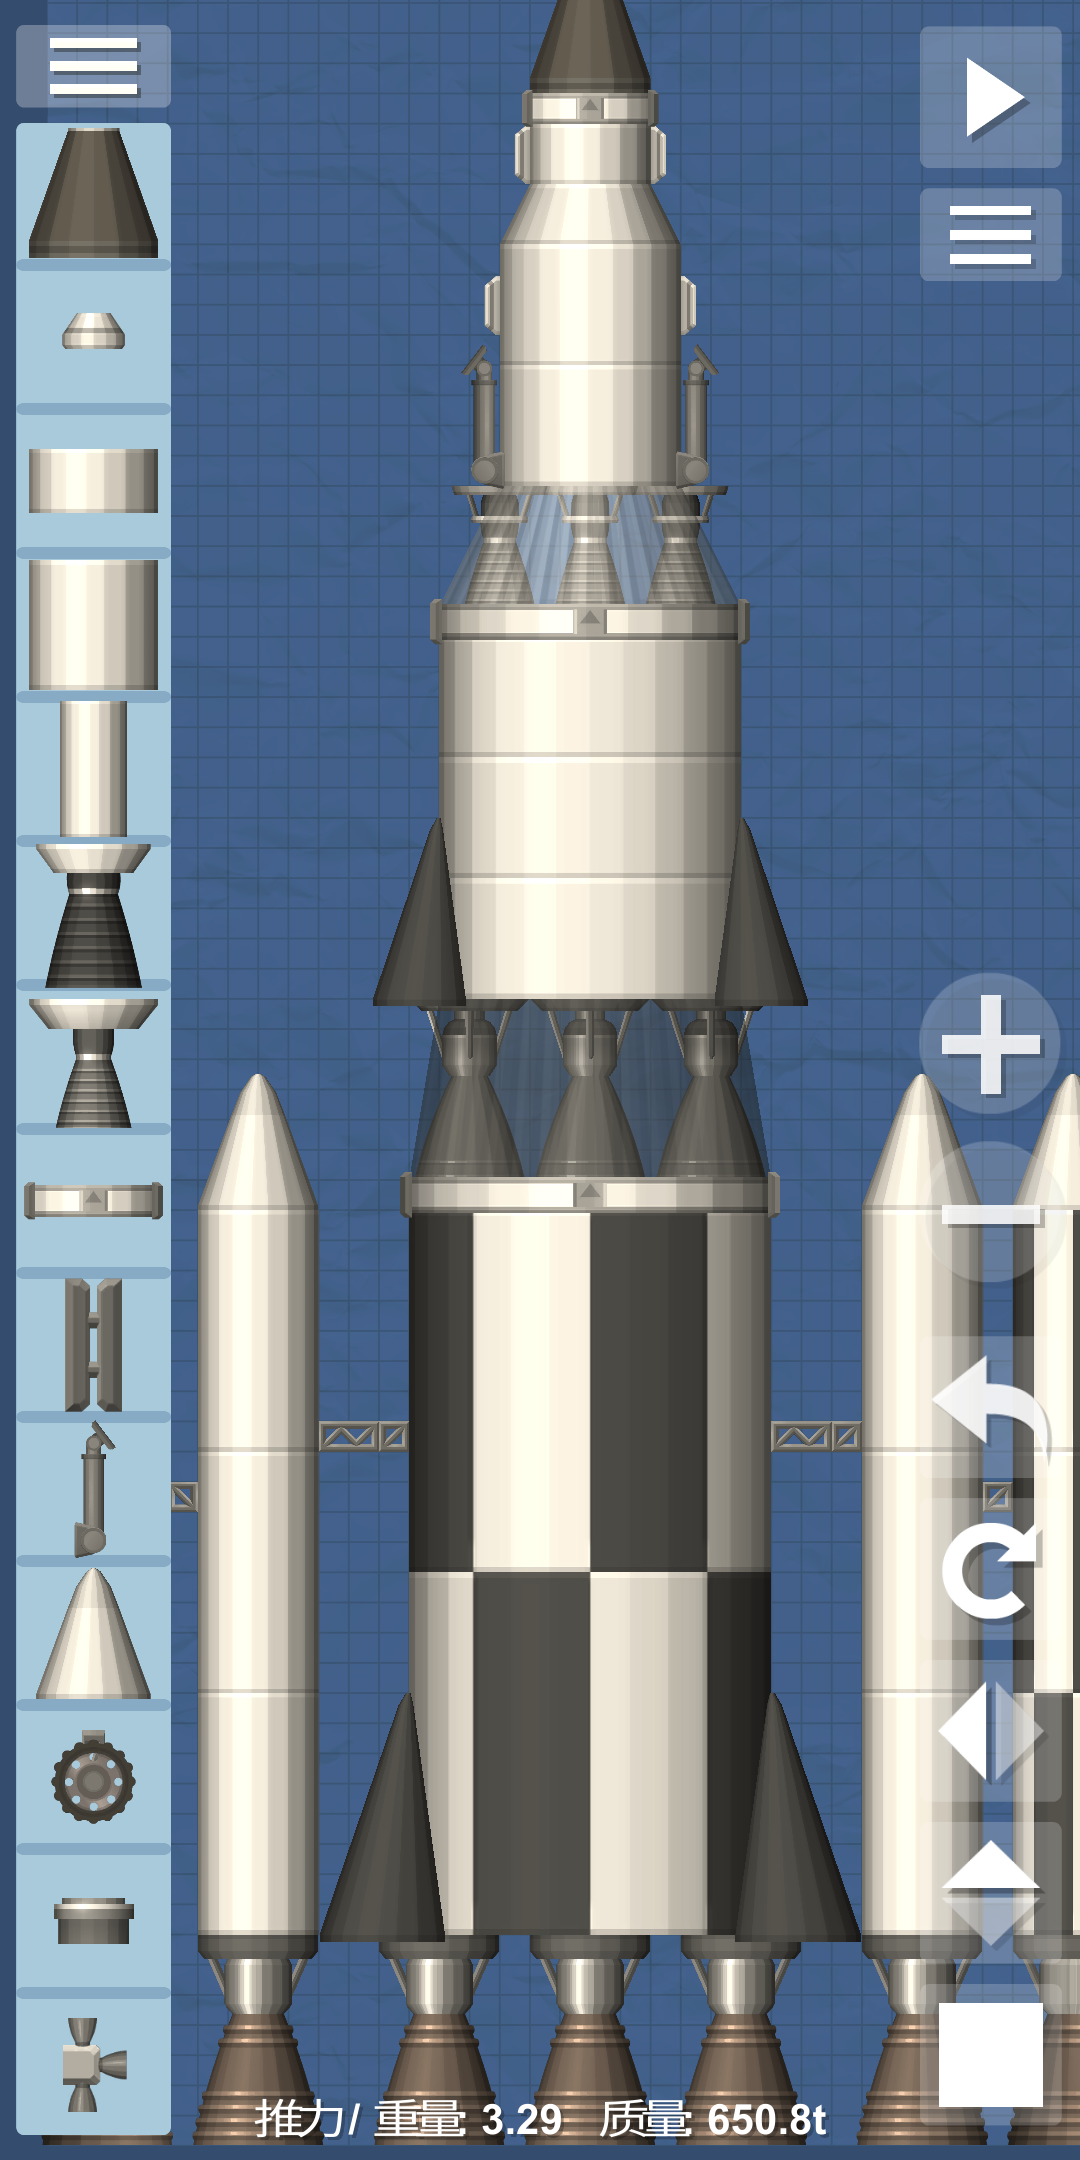 分享几个火箭,原则是用最少的重量,最简单的结构完成任务